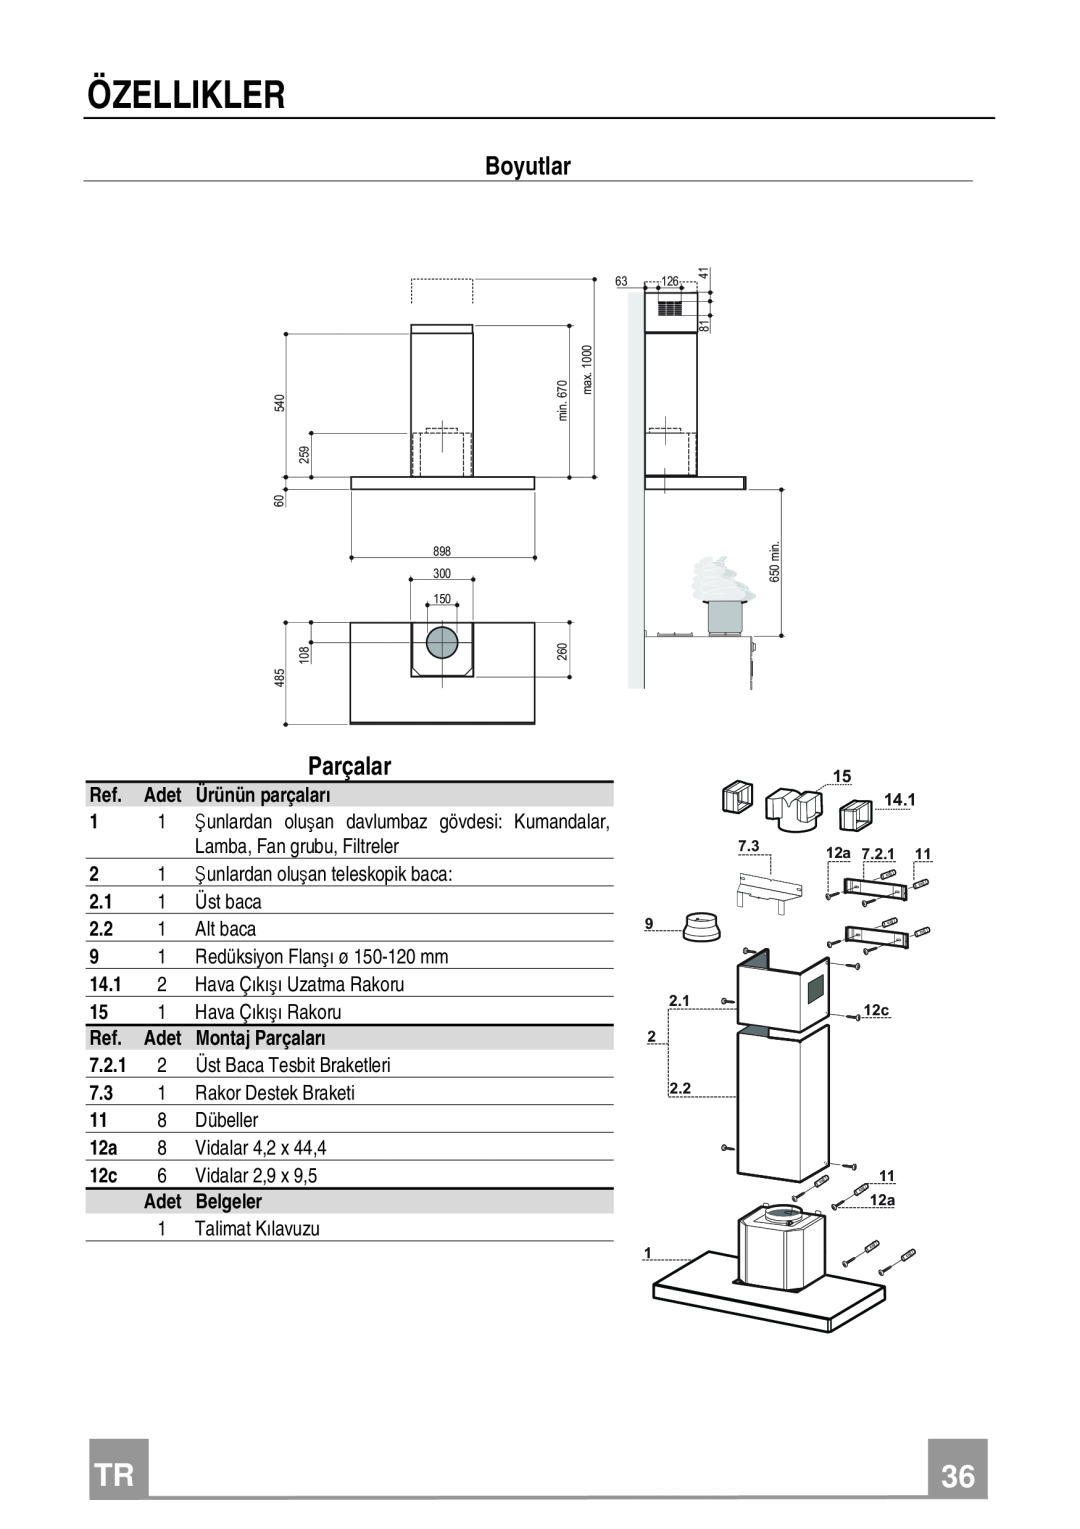 Franke Consumer Products FCR 908 TC manual Özellikler, Boyutlar, Parçalar 